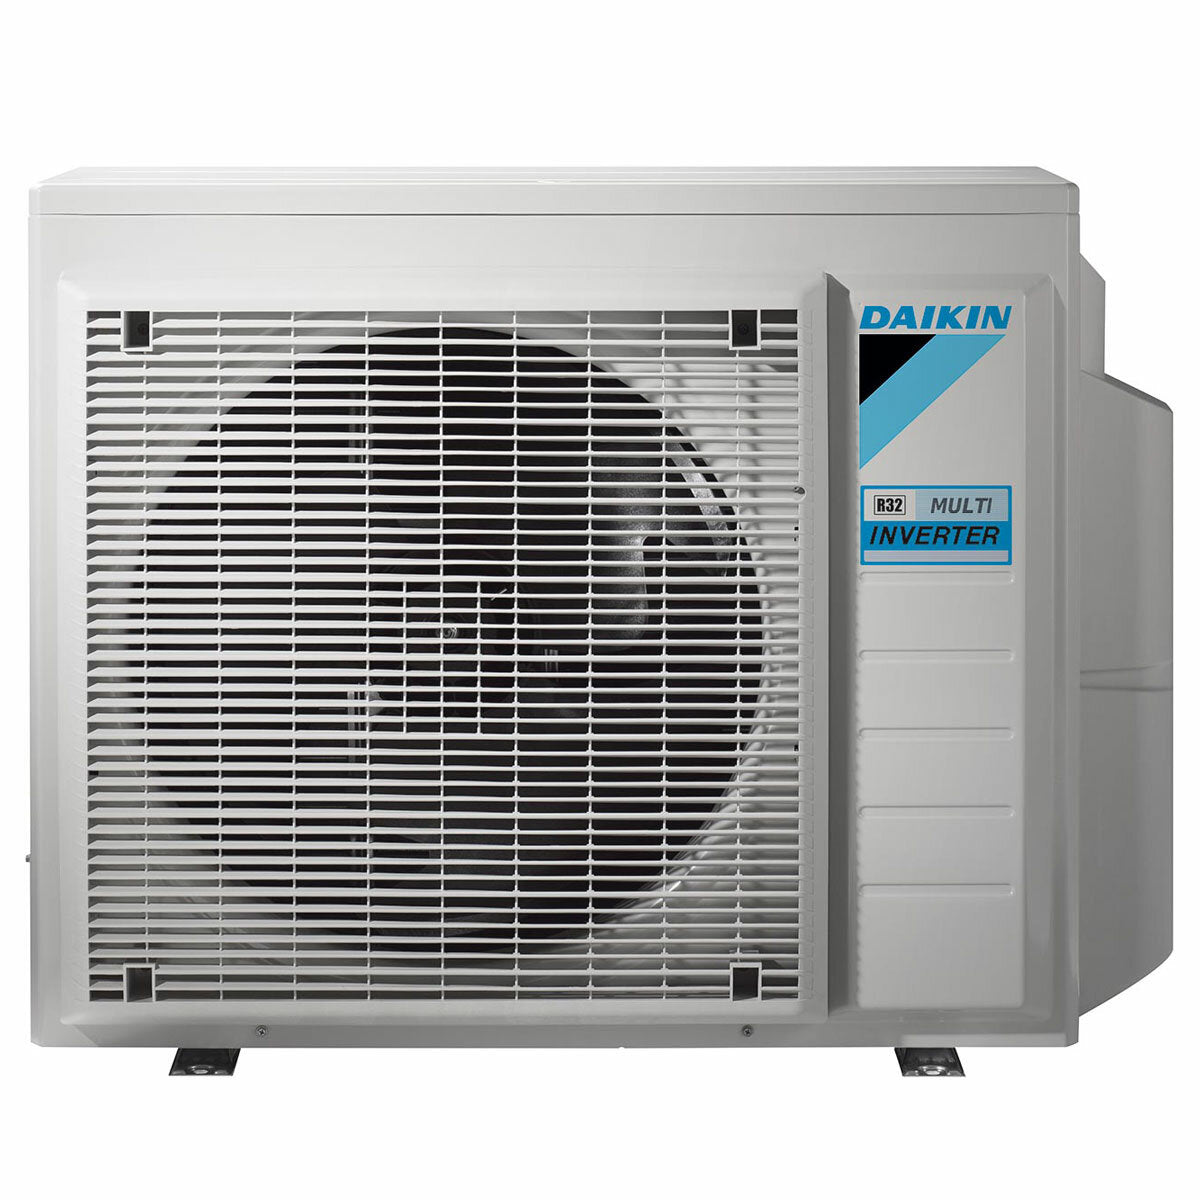 Daikin Emura Klimaanlage 3 Split Panels 7000 + 9000 + 9000 + 12000 BTU Inverter A + WLAN Außeneinheit 6,8 kW Silber